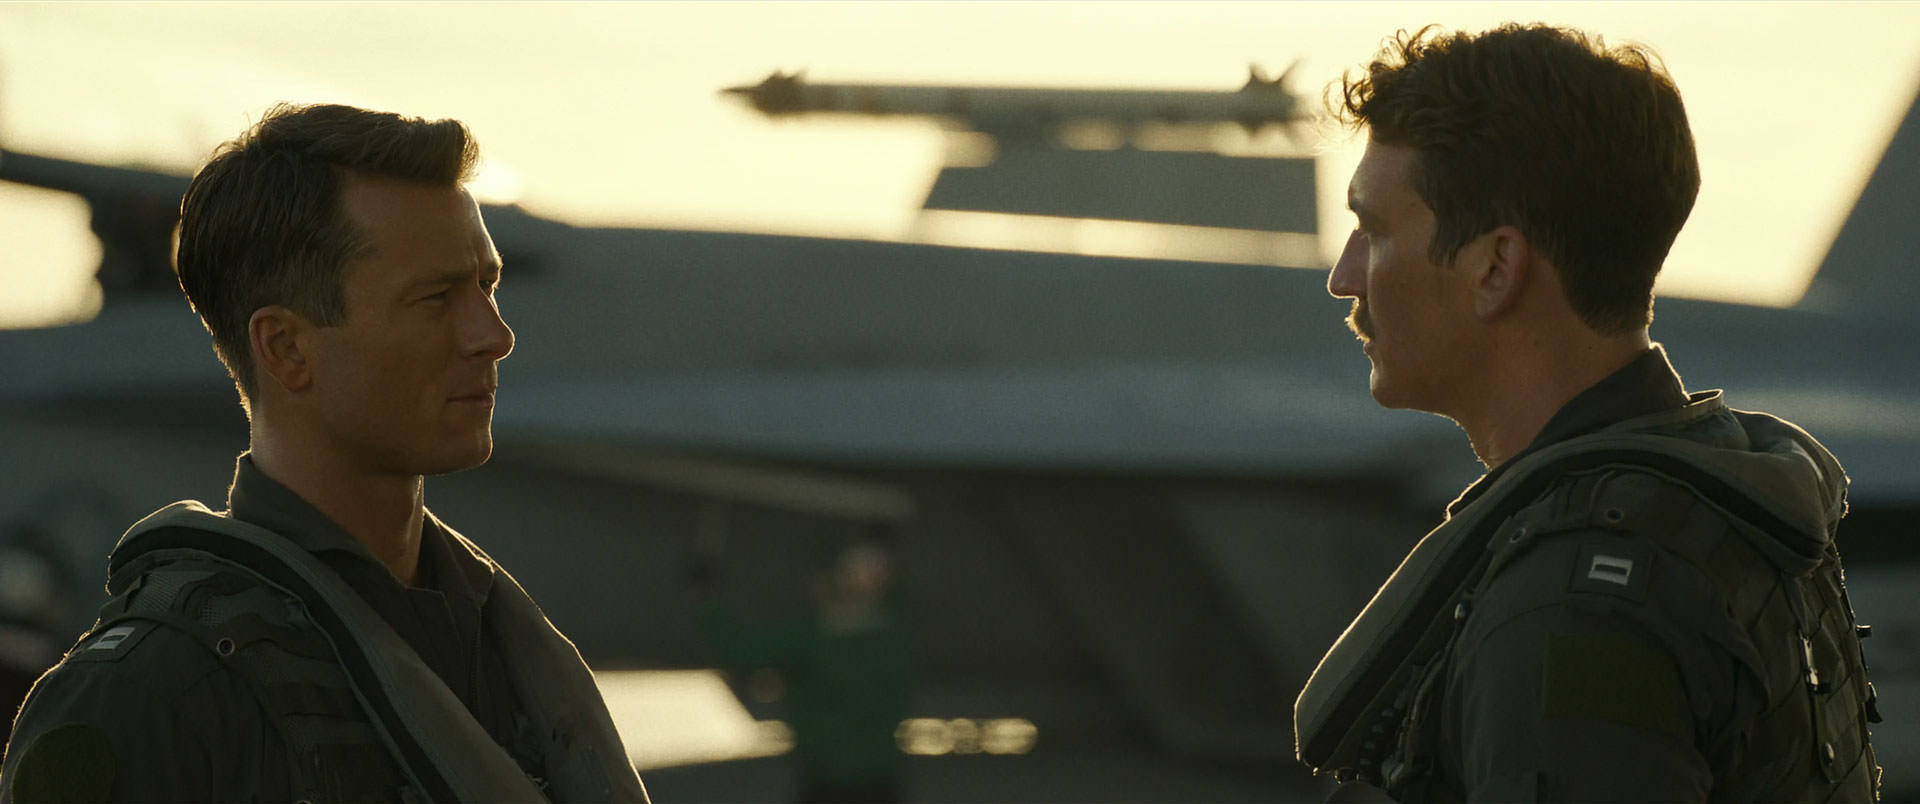 گلن پاول در مقابل مایلز تلر در نمایی از فیلم تاپ گان ماوریک